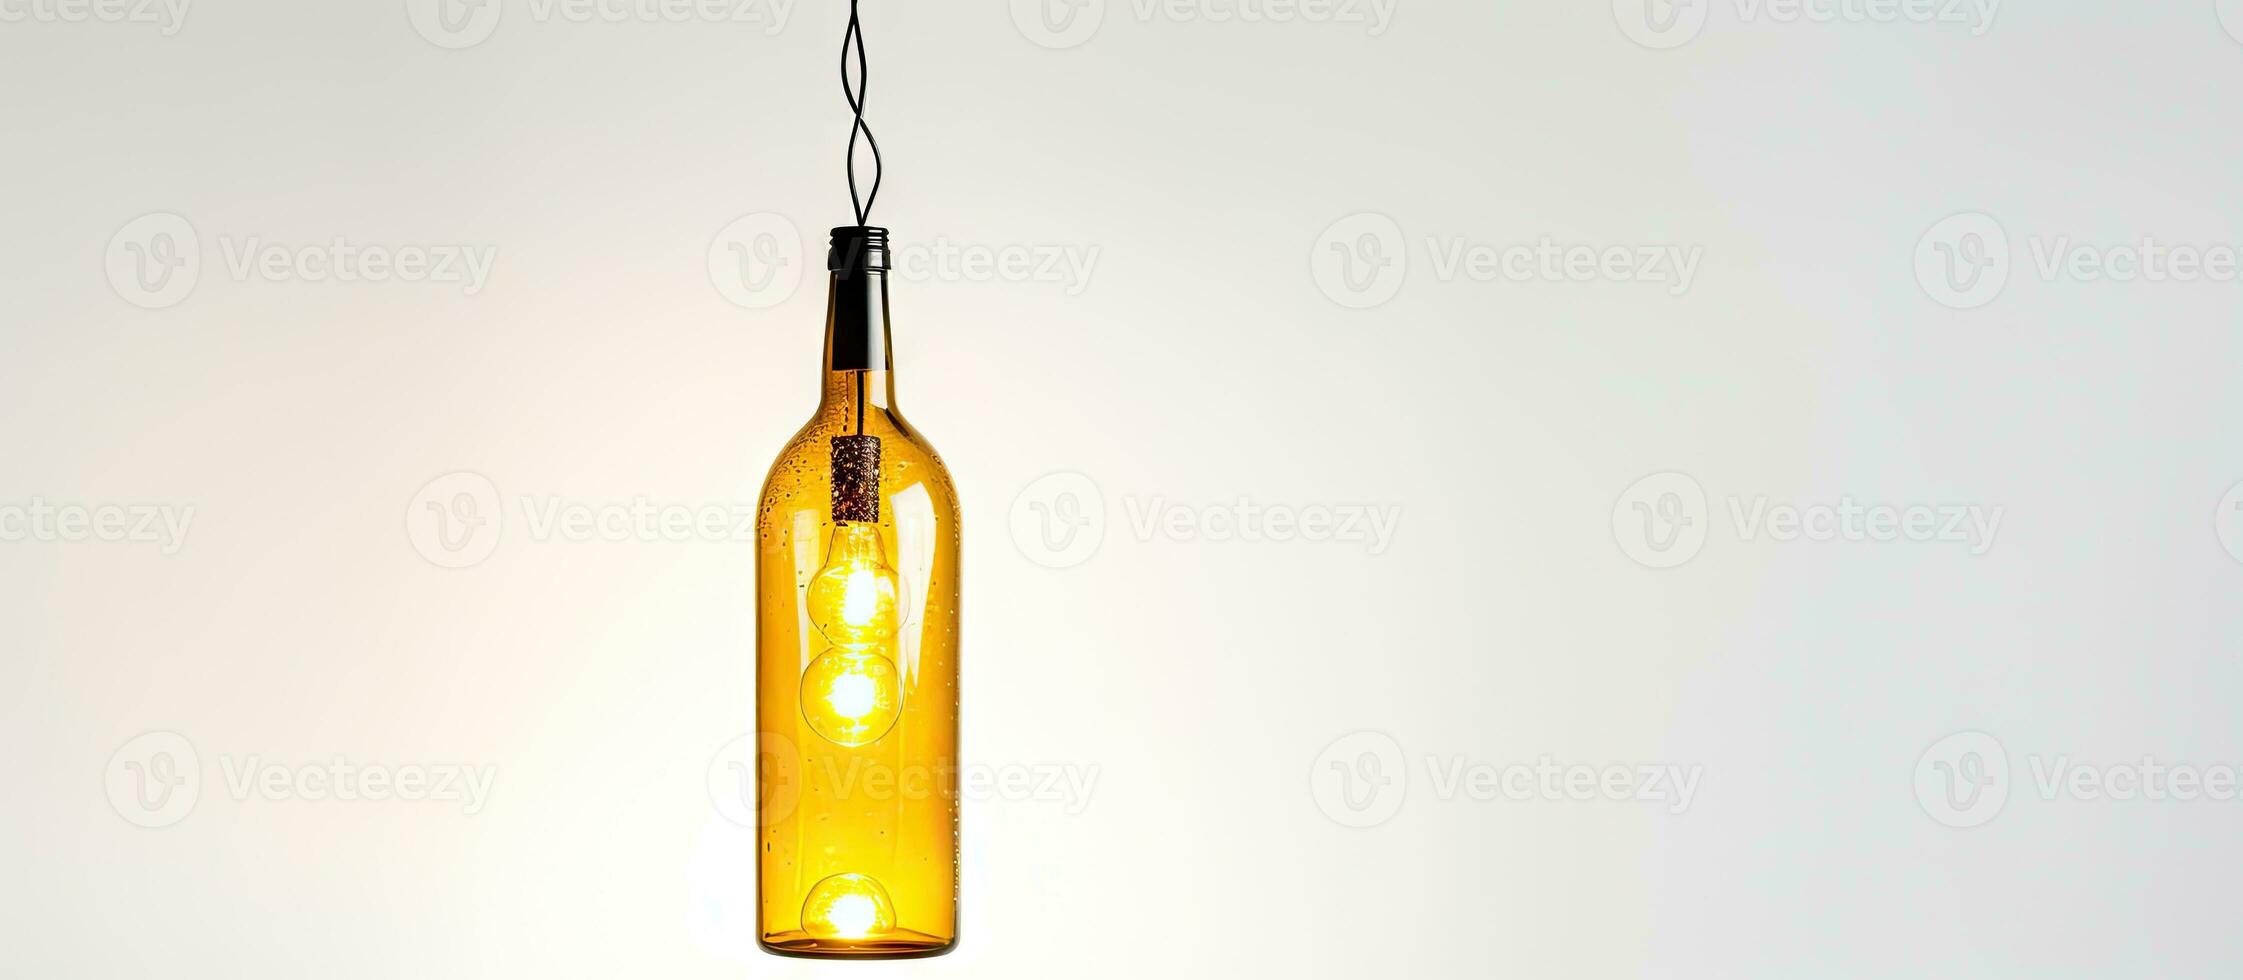 contemporâneo vinho garrafa luminária isolado em branco foto